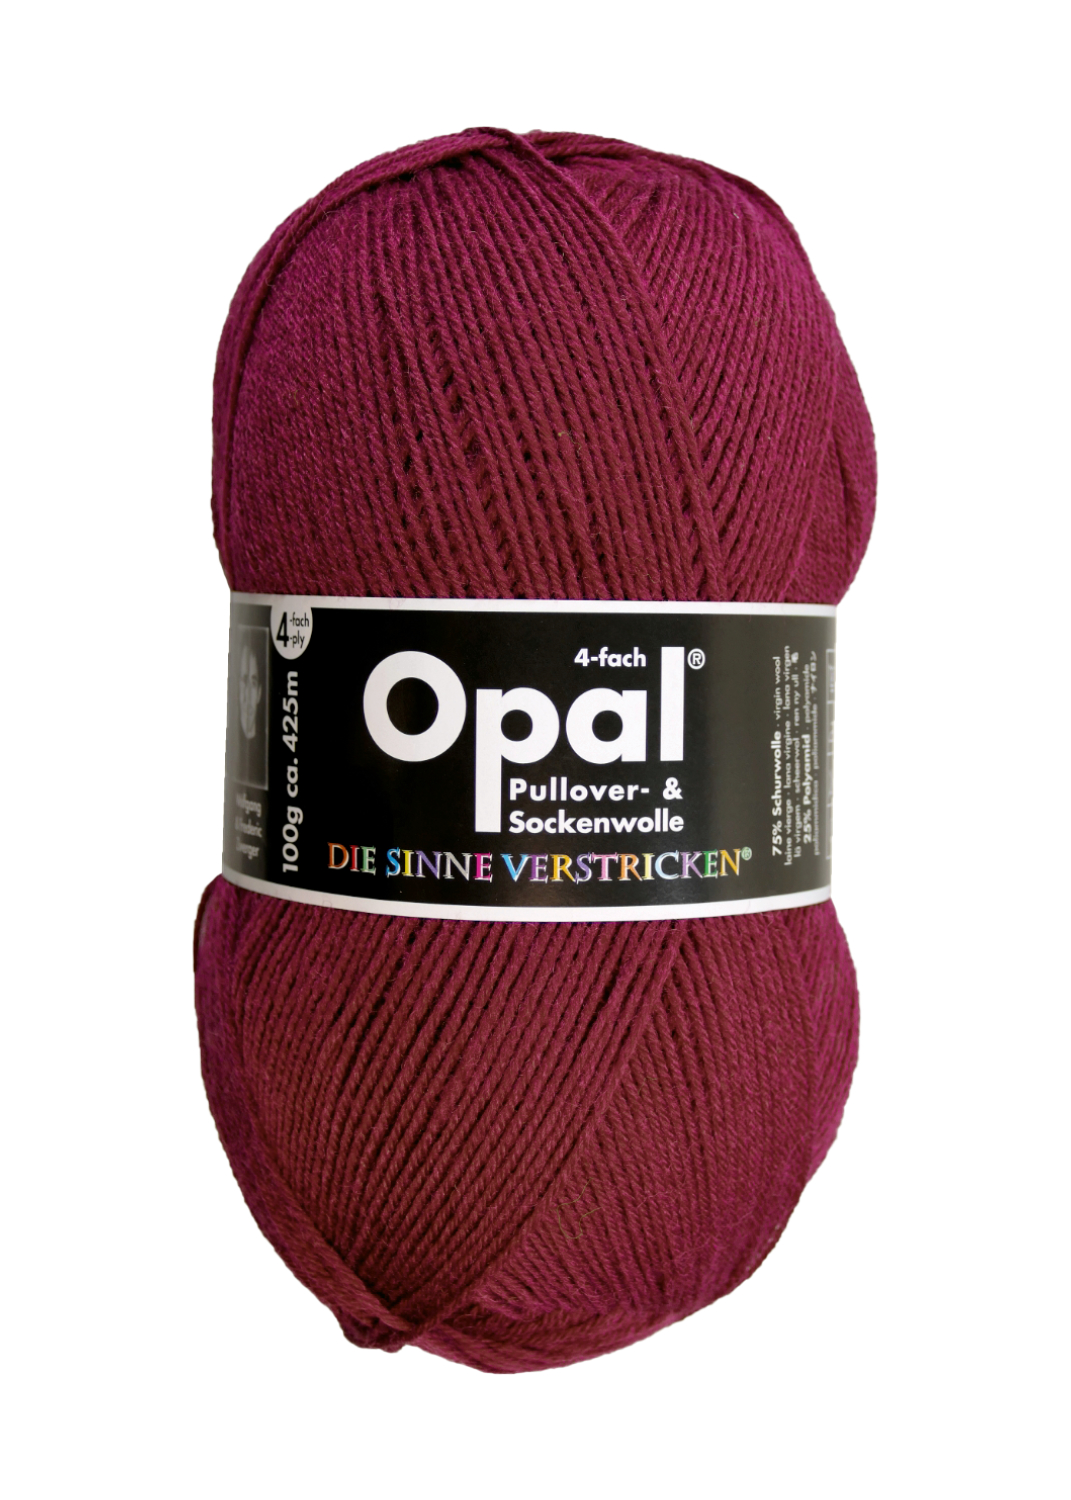 OPAL uni - 4-fach Sockenwolle 5196 - burgund